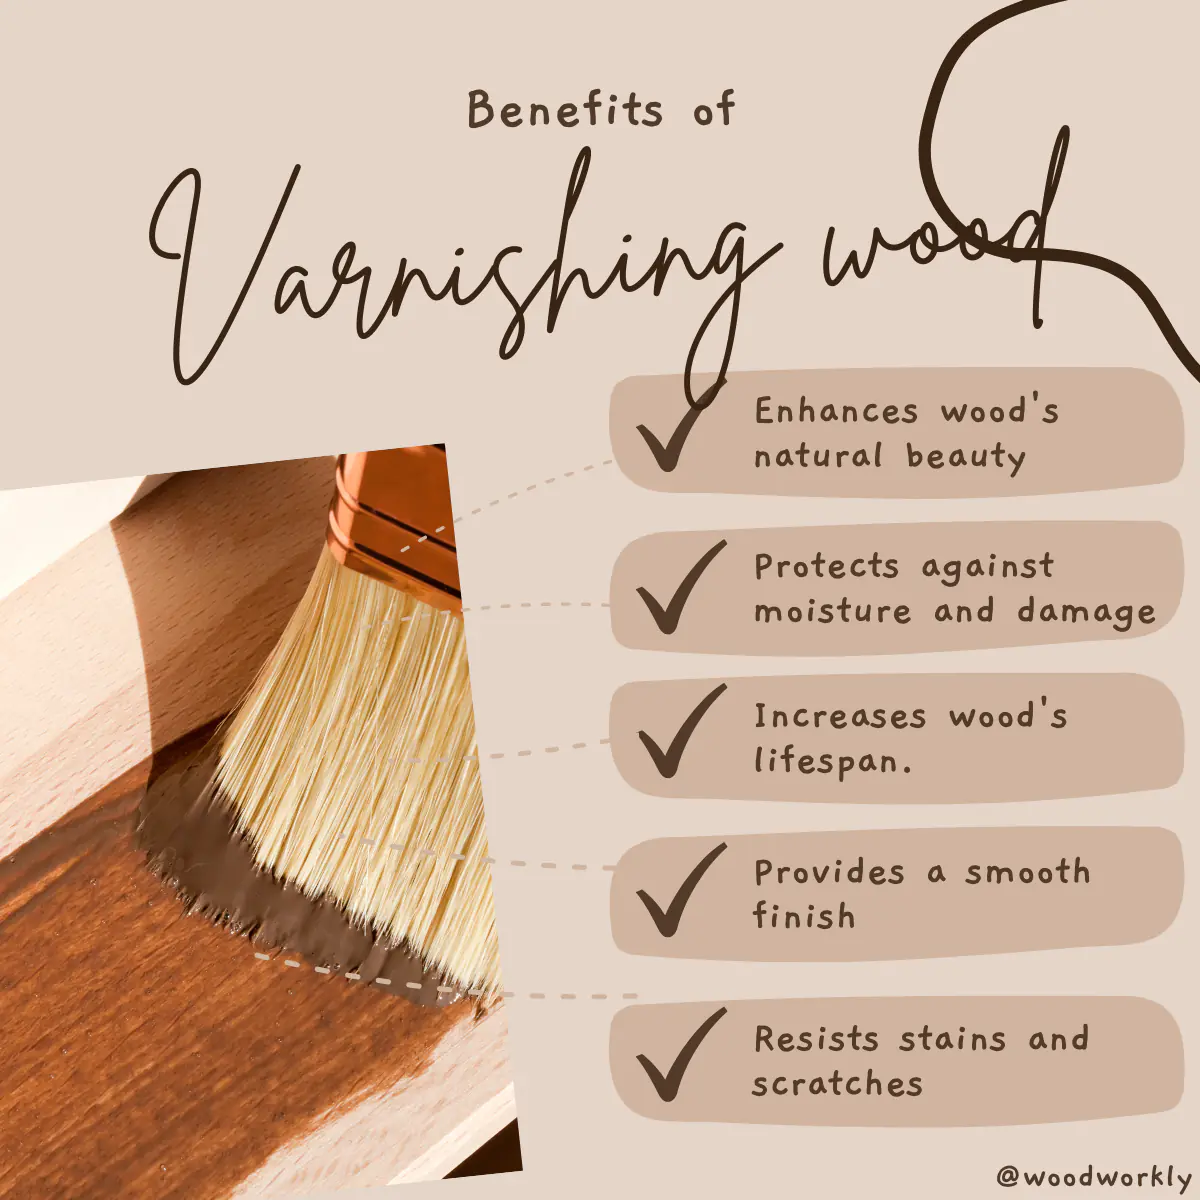 Benefits of varnishing wood